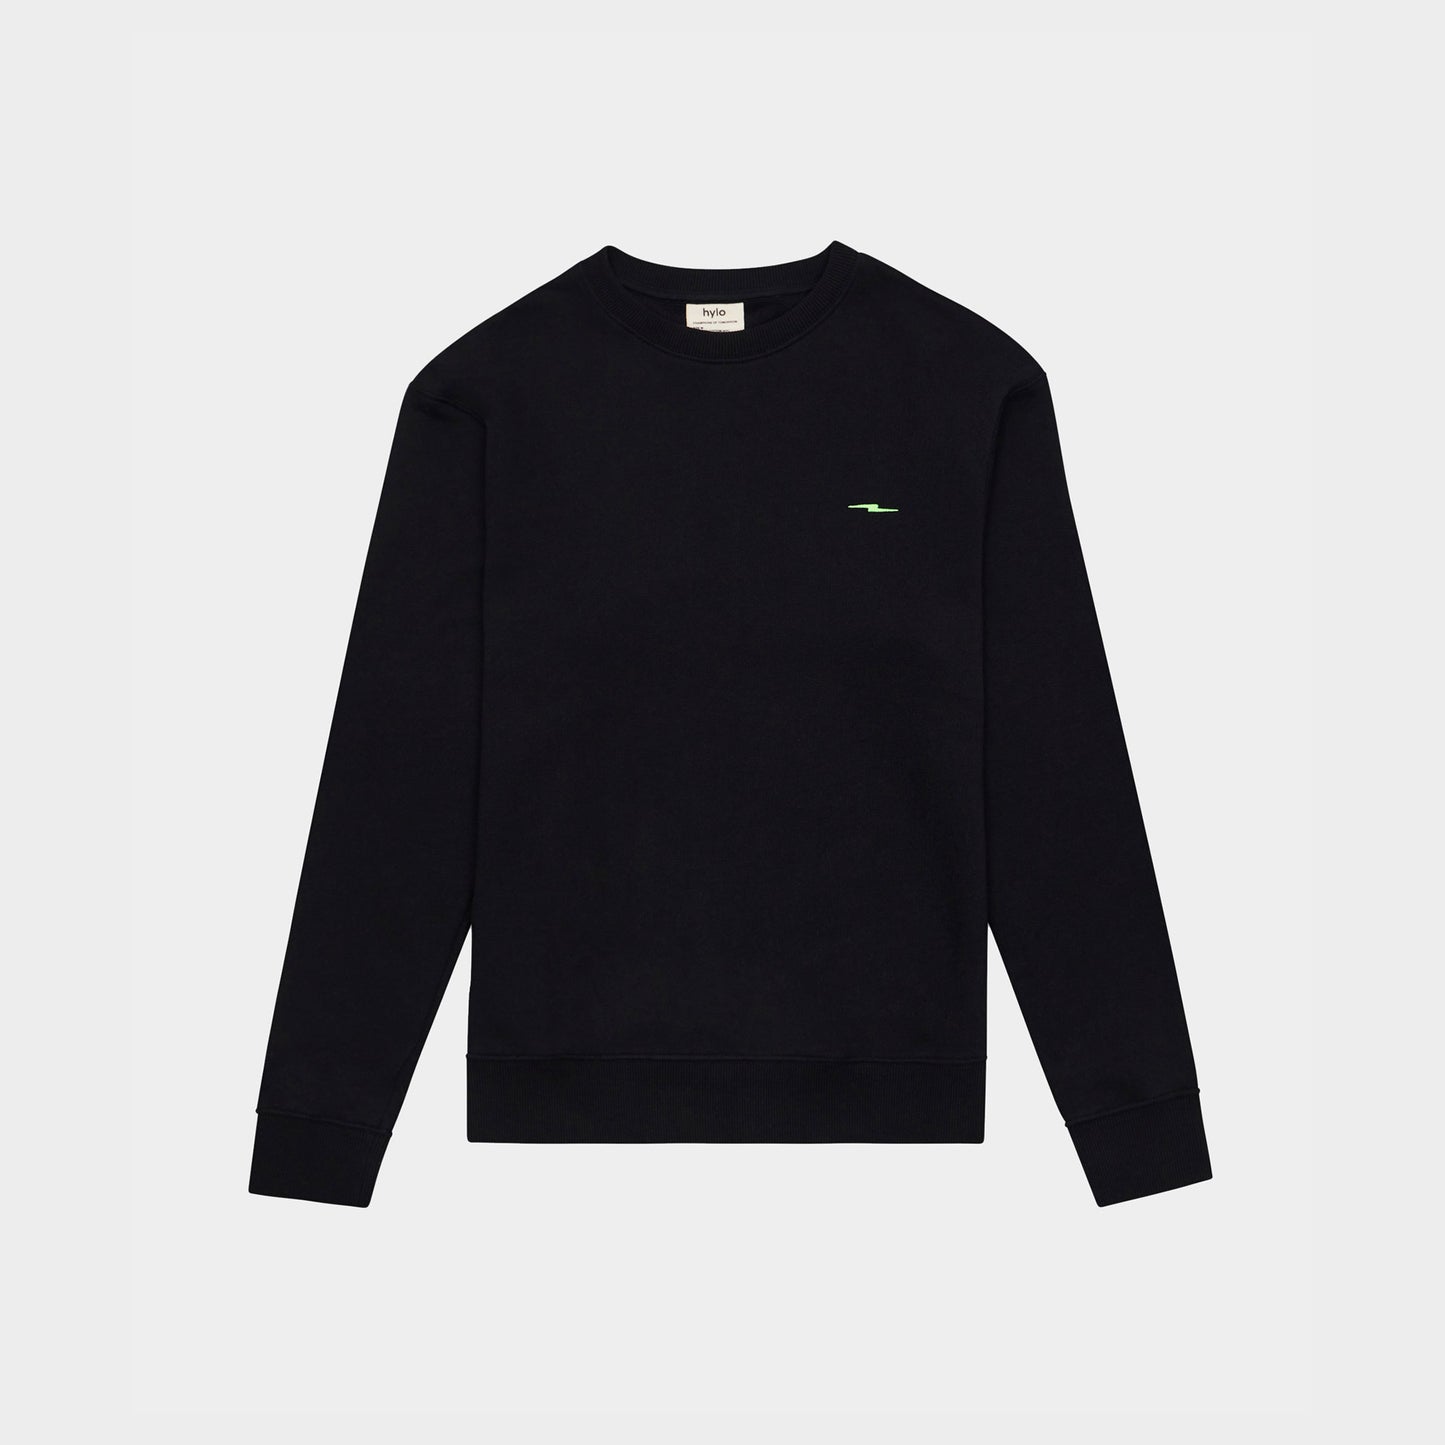 Men's Graphic Sweatshirt - Black/Solar Green